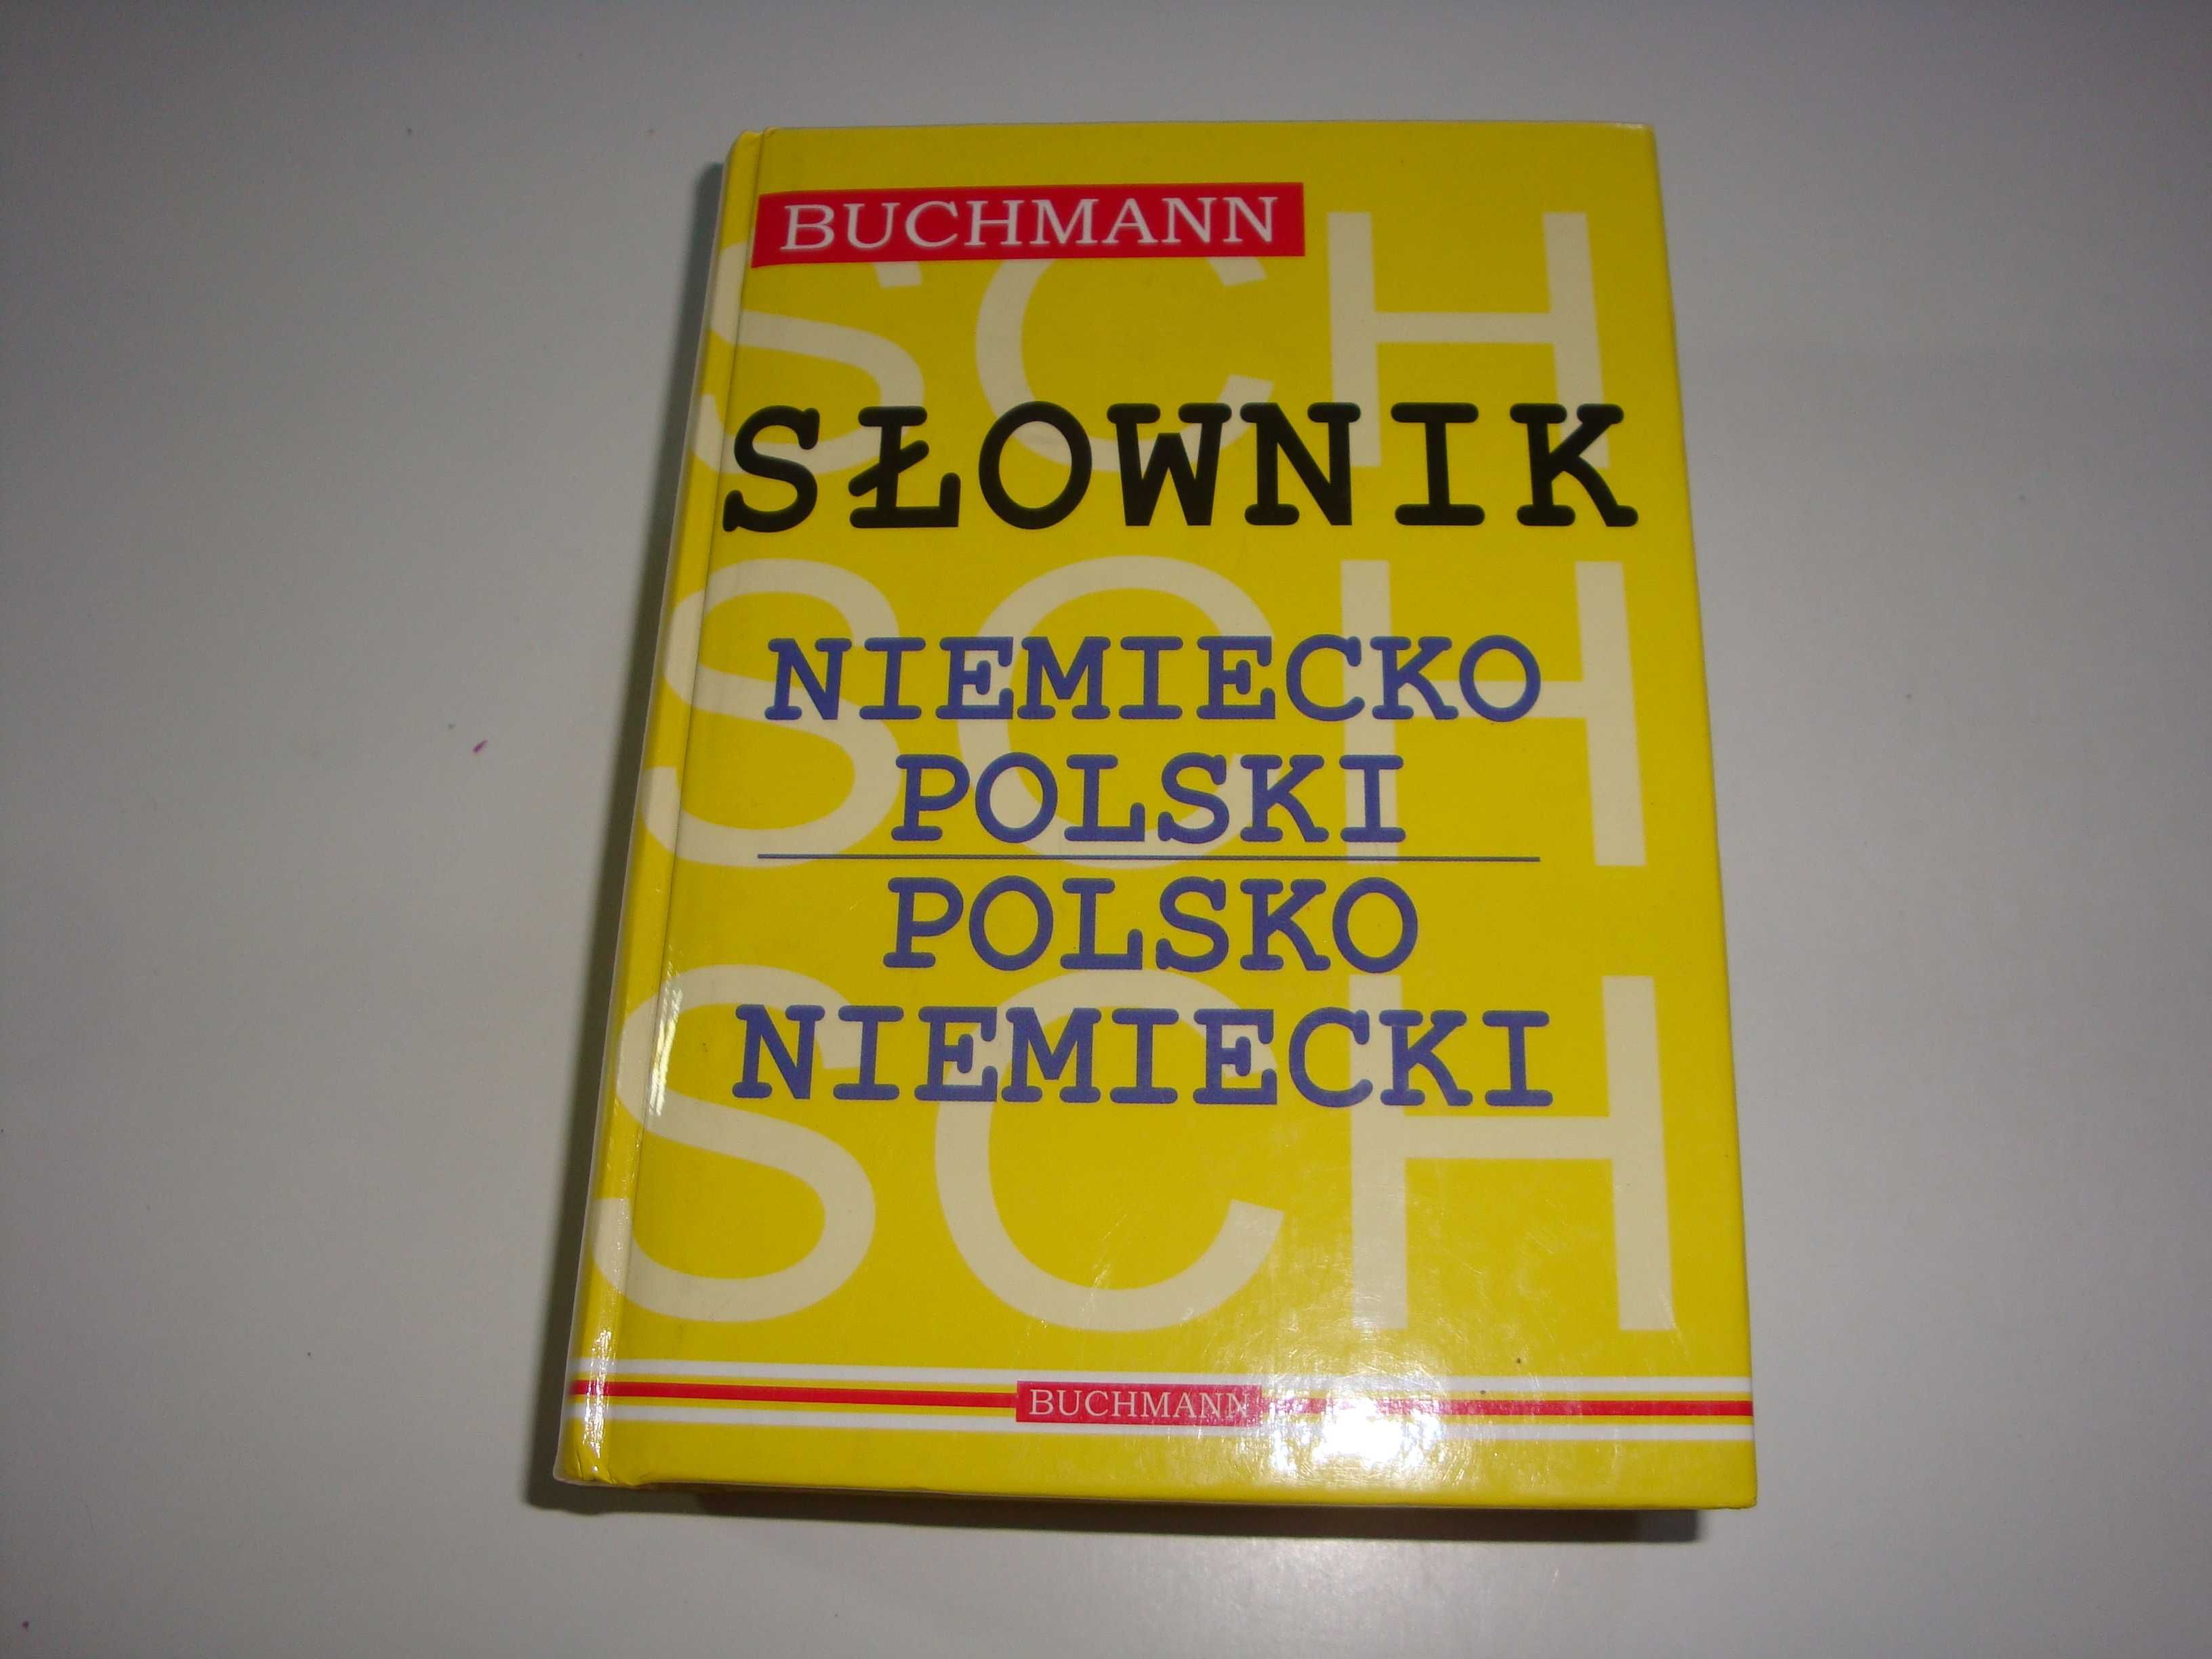 Słownik niemiecko-polski, polsko-niemiecki